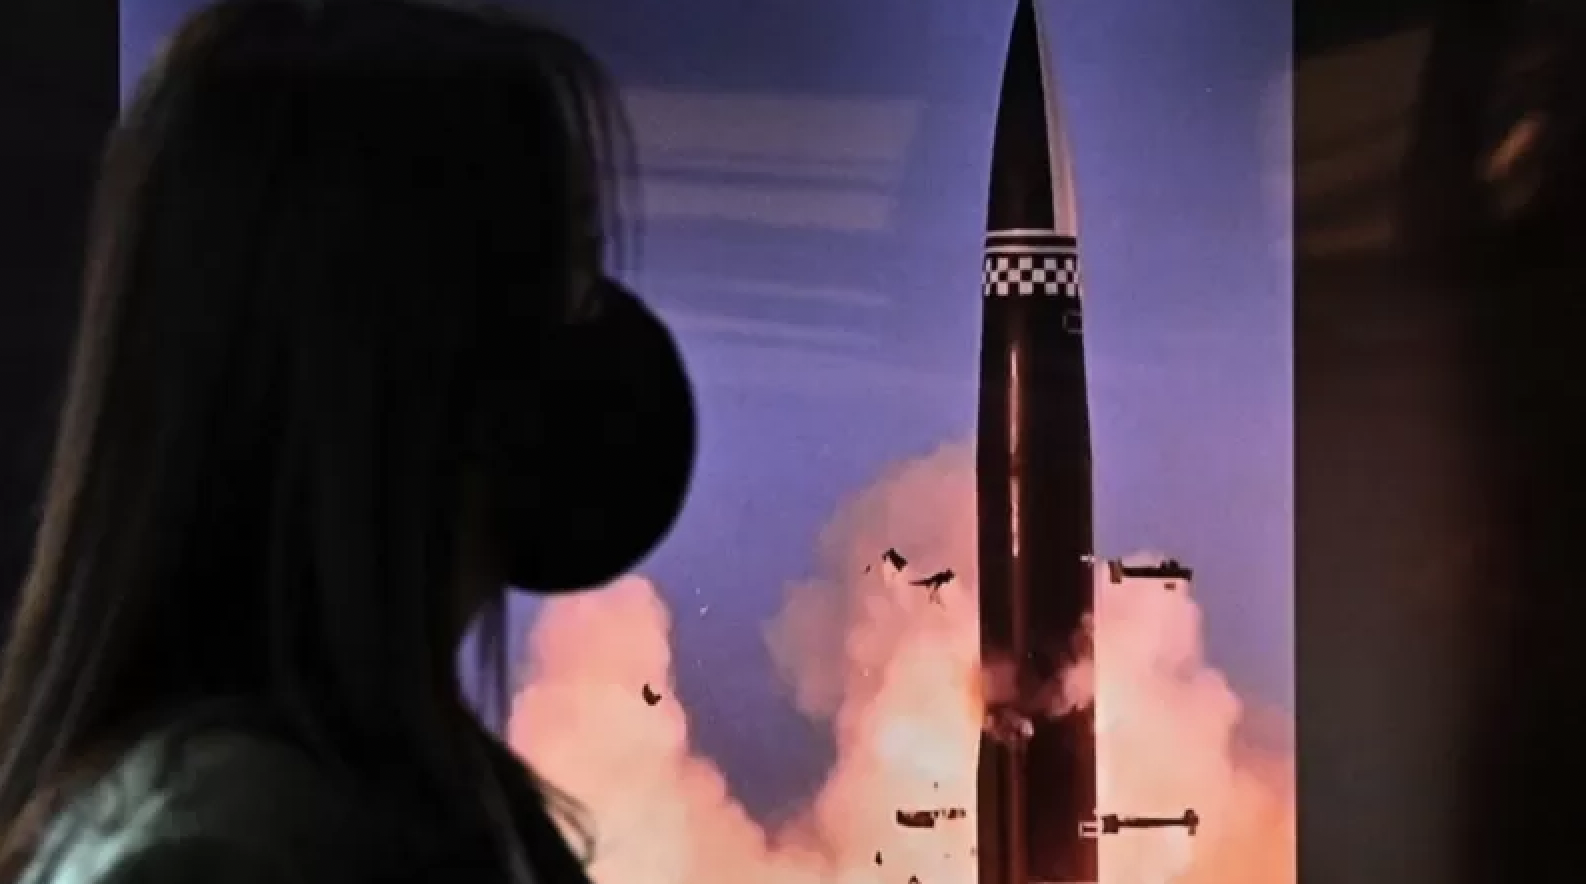 كوريا الشمالية تطلق صاروخاً بالستياً باتجاه البحر